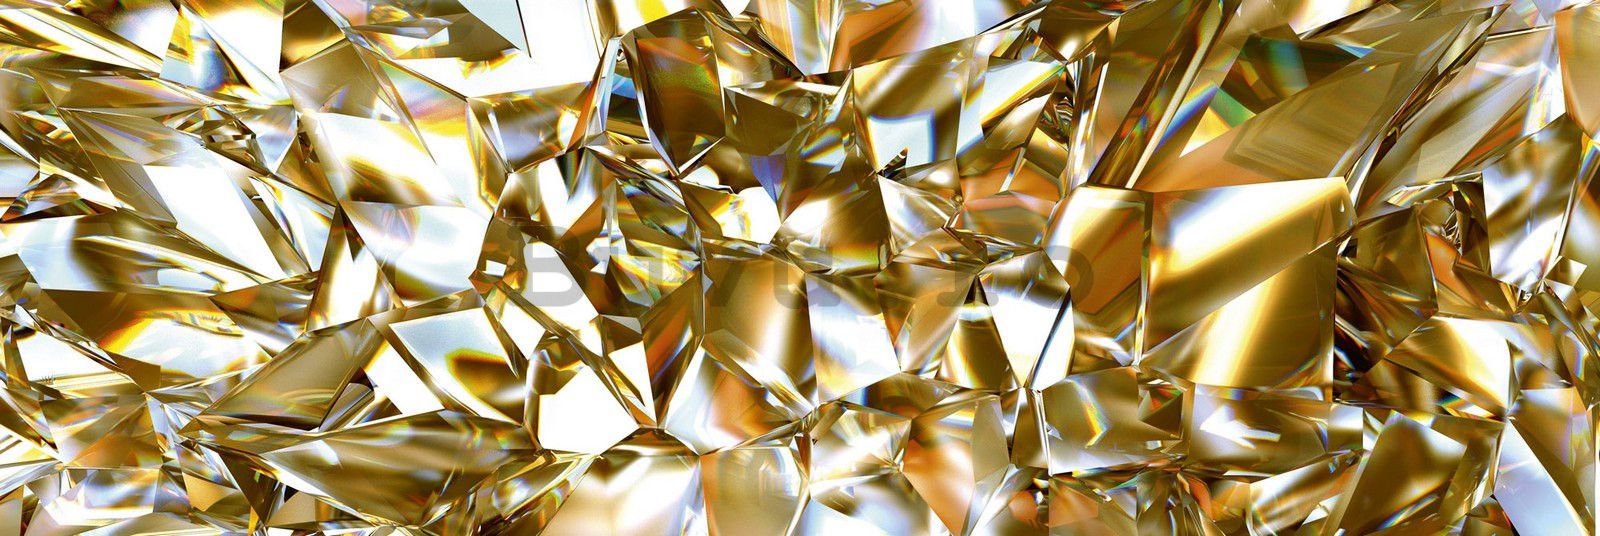 Tapet autoadeziv lavabil pentru bucătărie - Cristale de aur, 180x60 cm